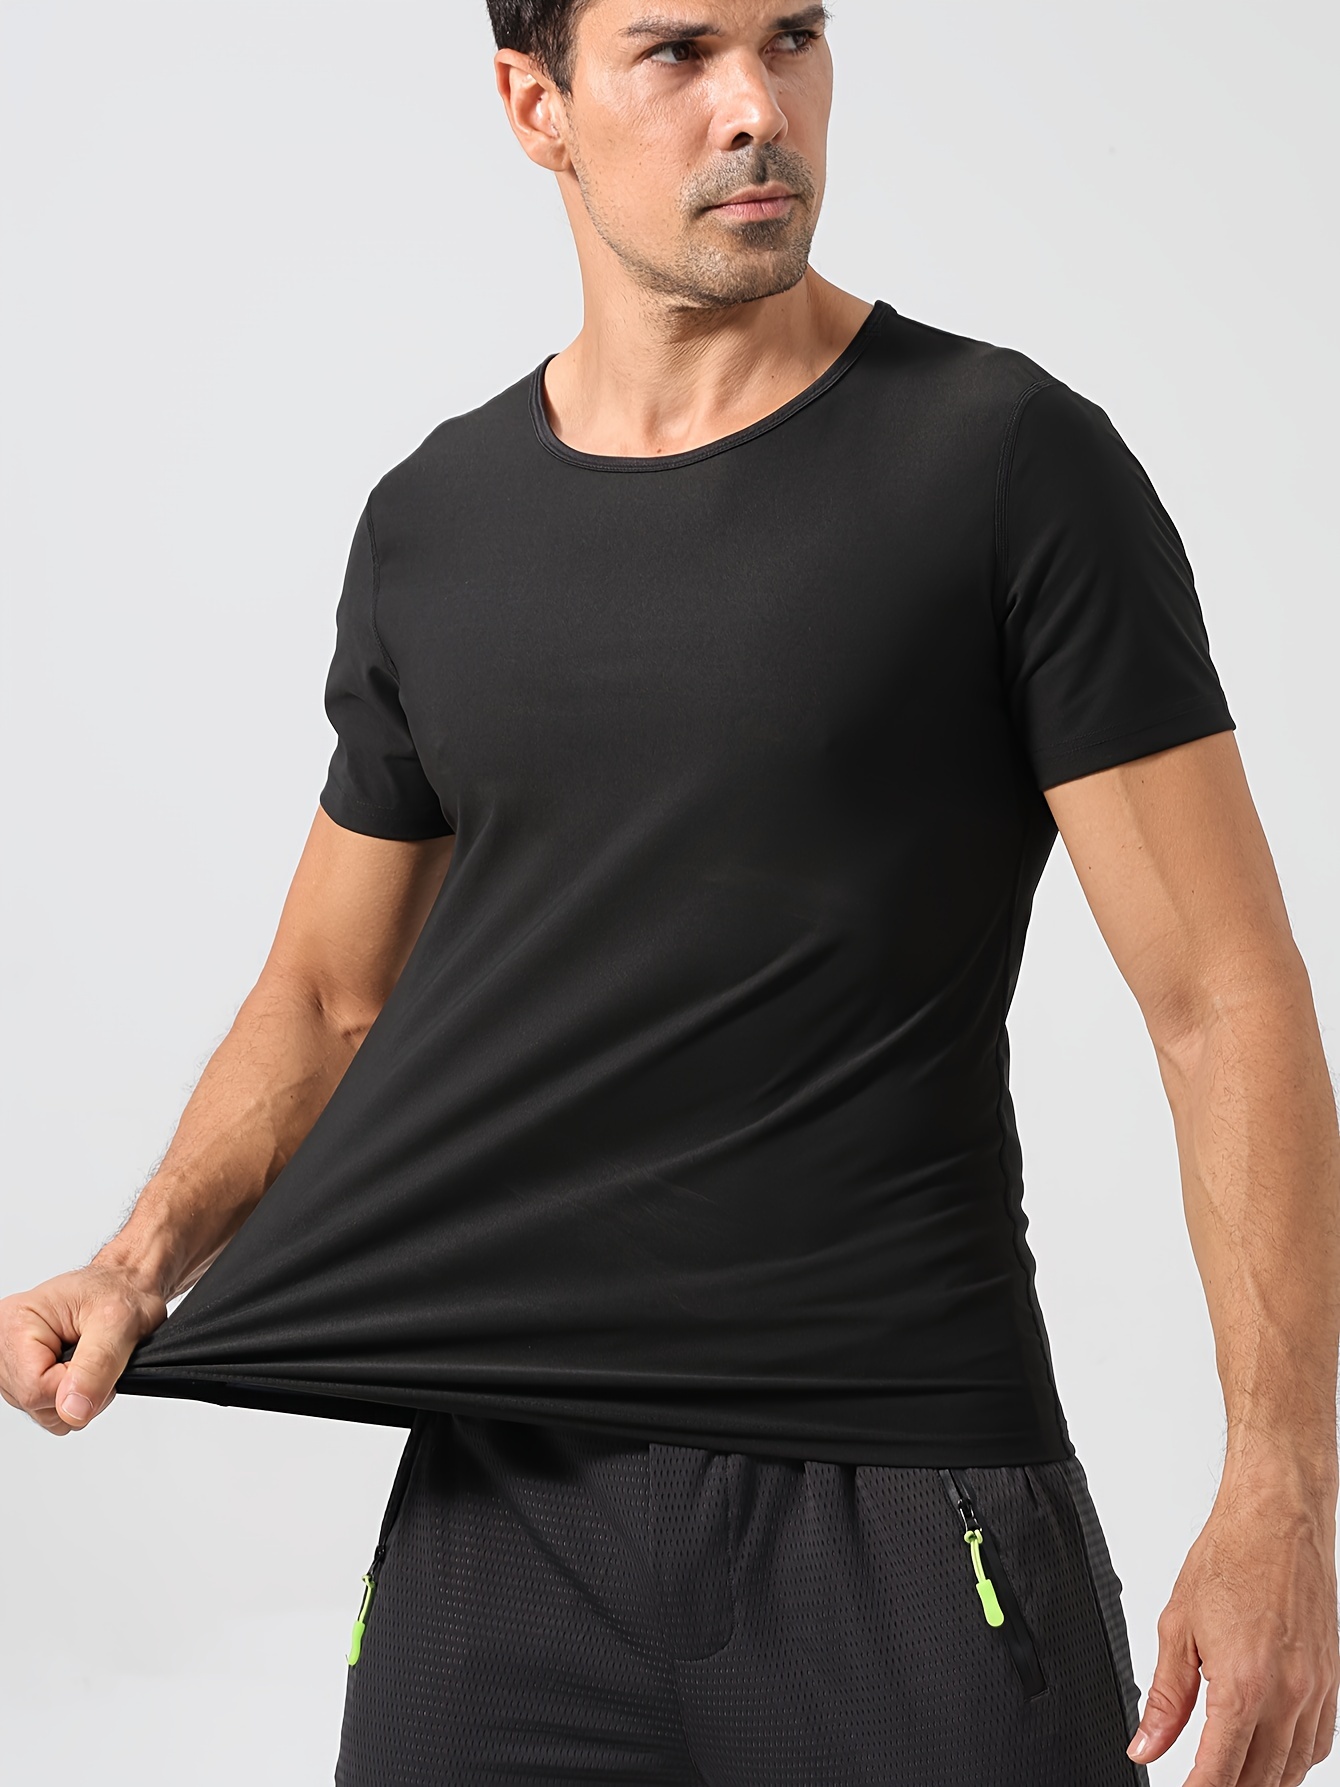 Men's Compression Sweat Sauna T shirt High Stretch Body - Temu